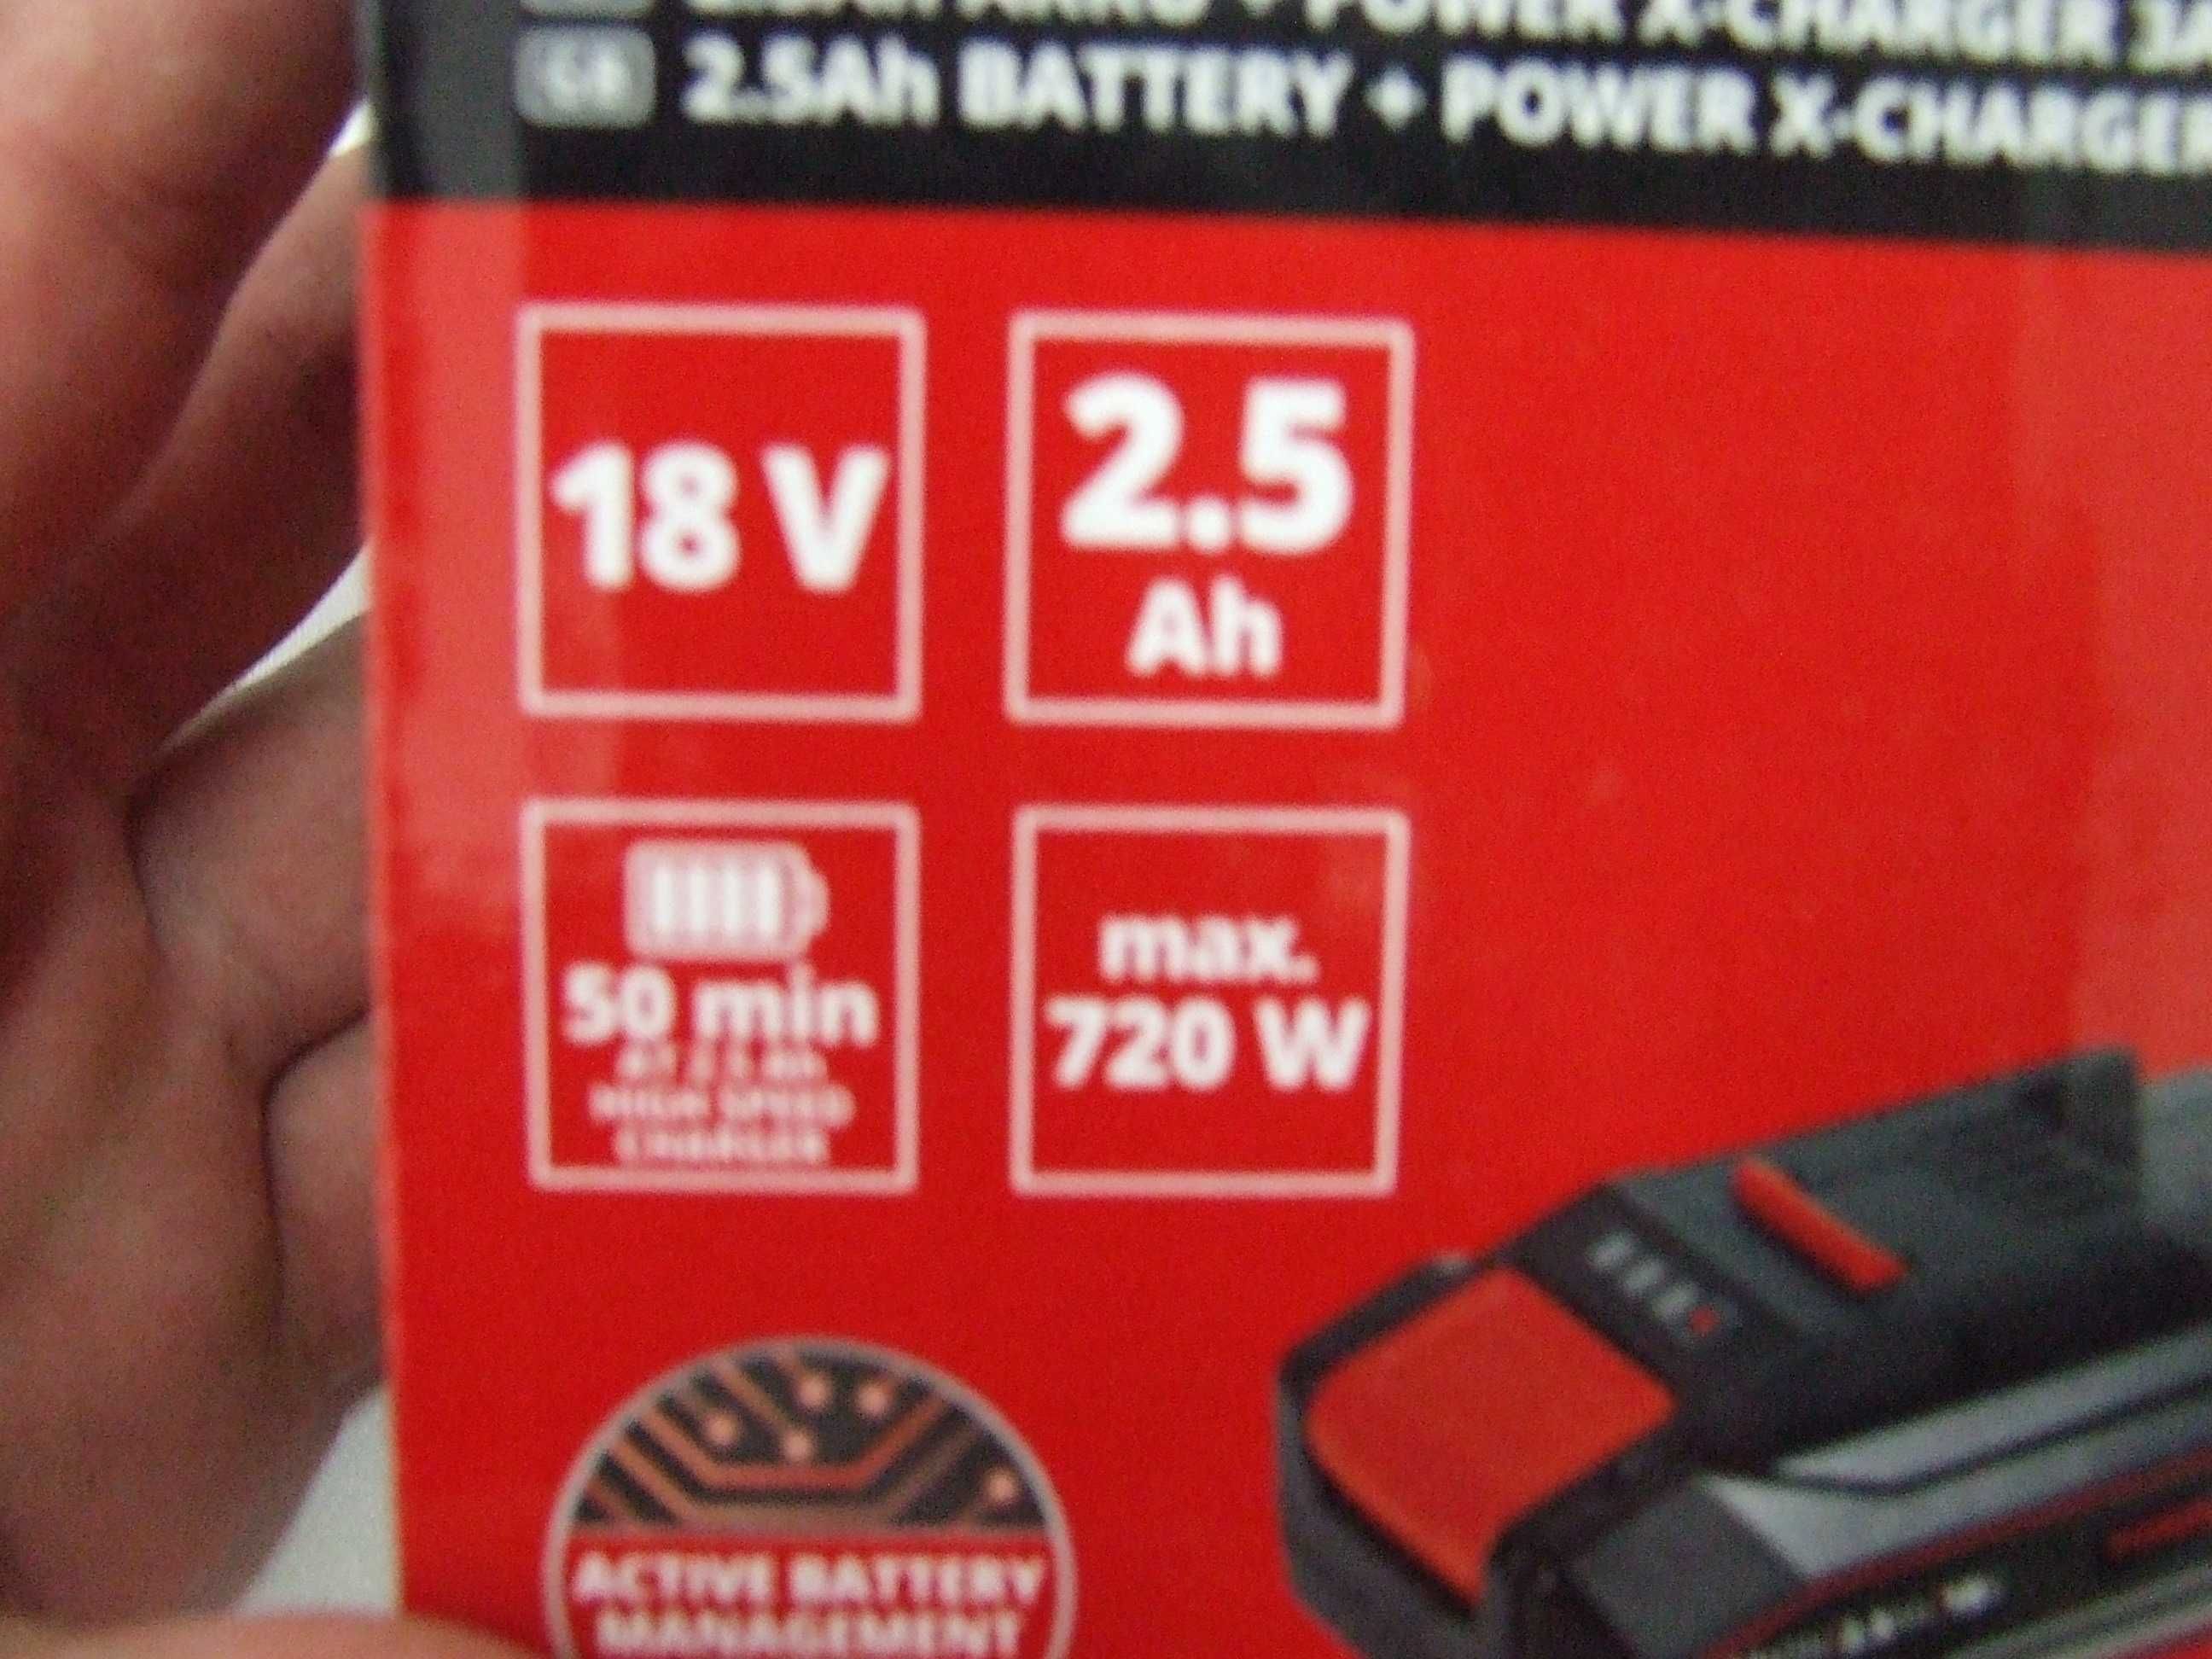 Kit Bateria + Carregador "Einhell" NOVO em Caixa (Nunca Utilizados)